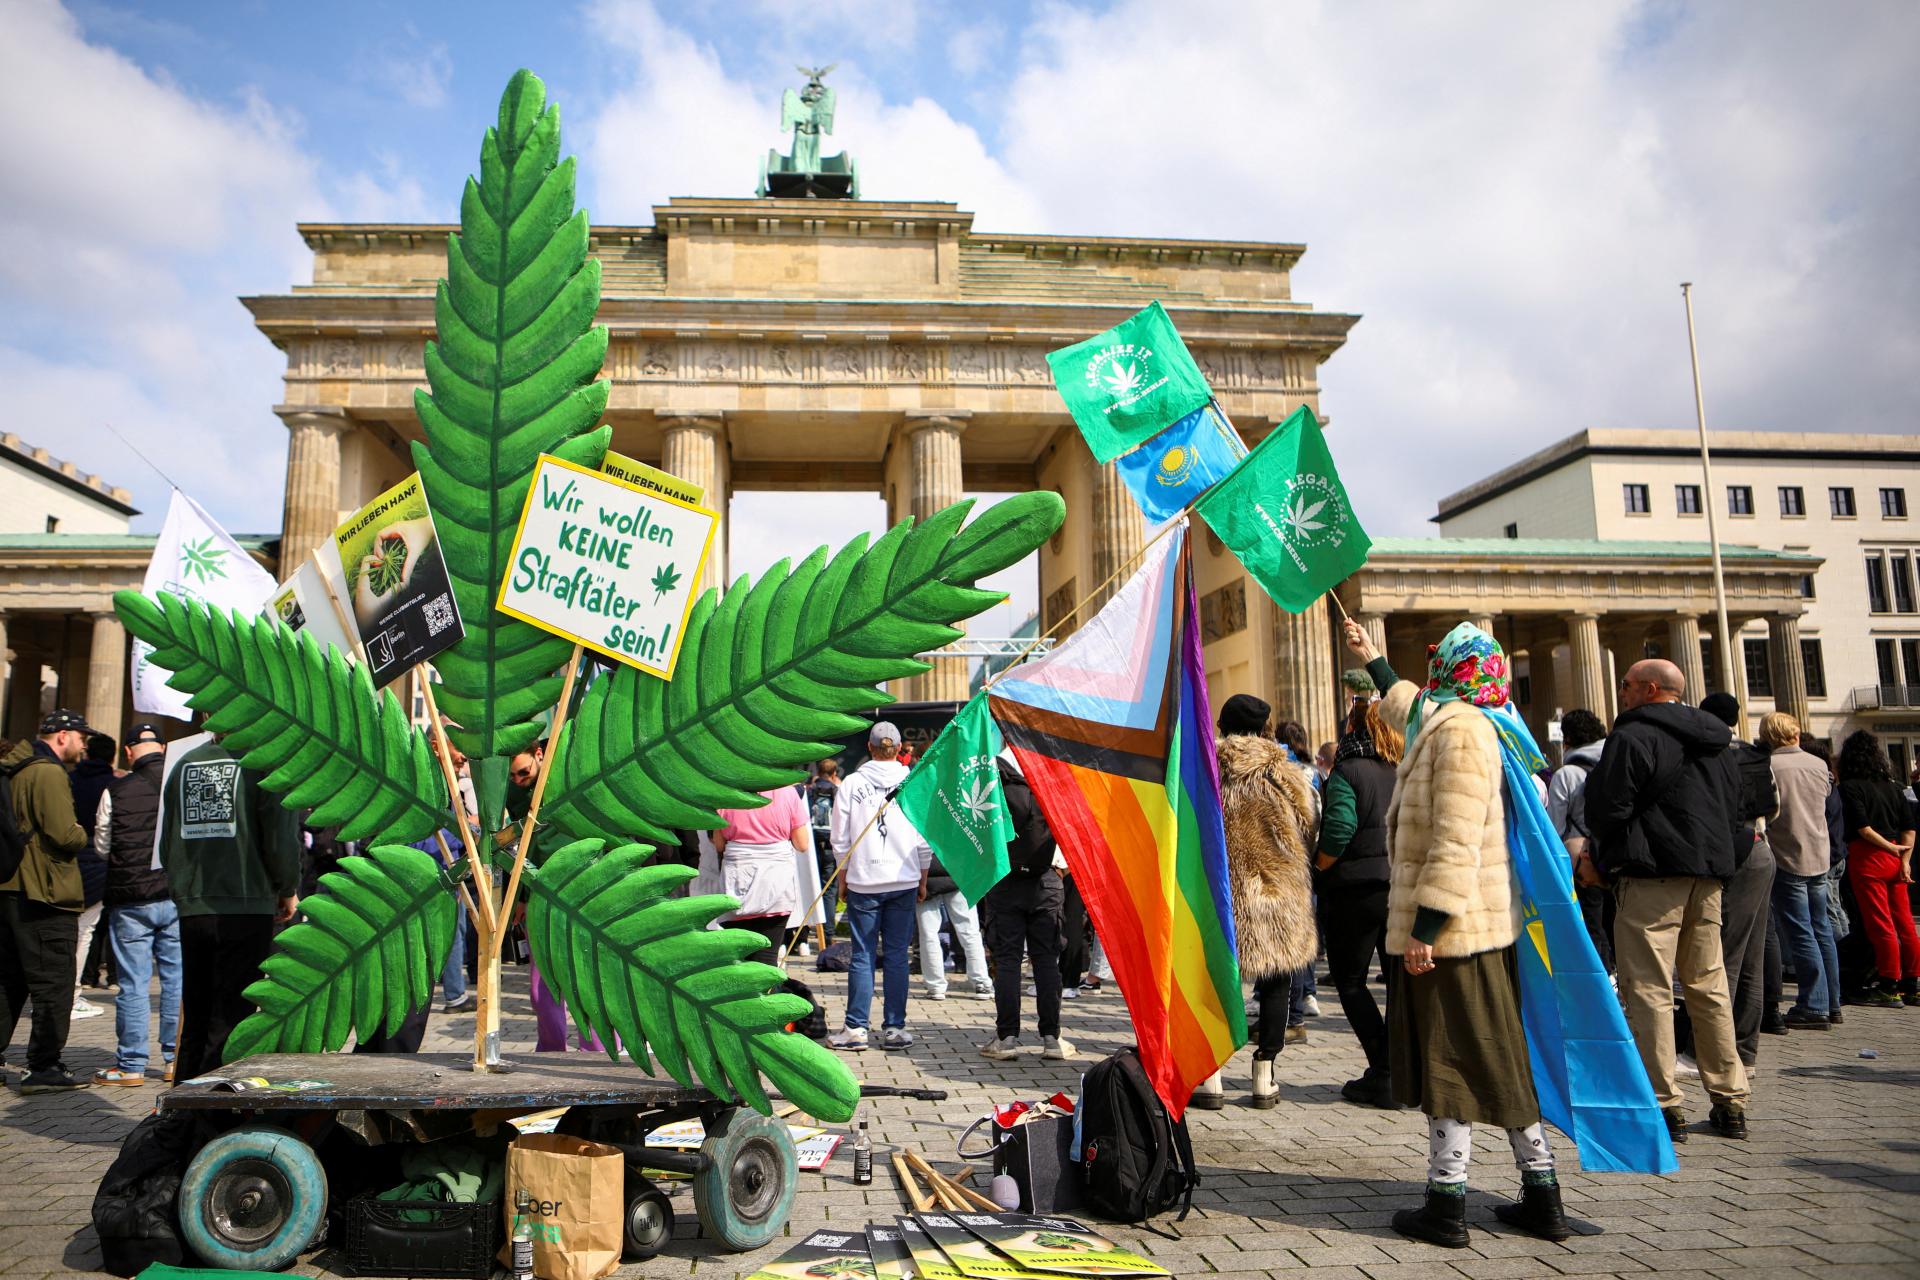 Nemecký minister zdravotníctva trvá na legalizácii marihuany aj napriek odporu